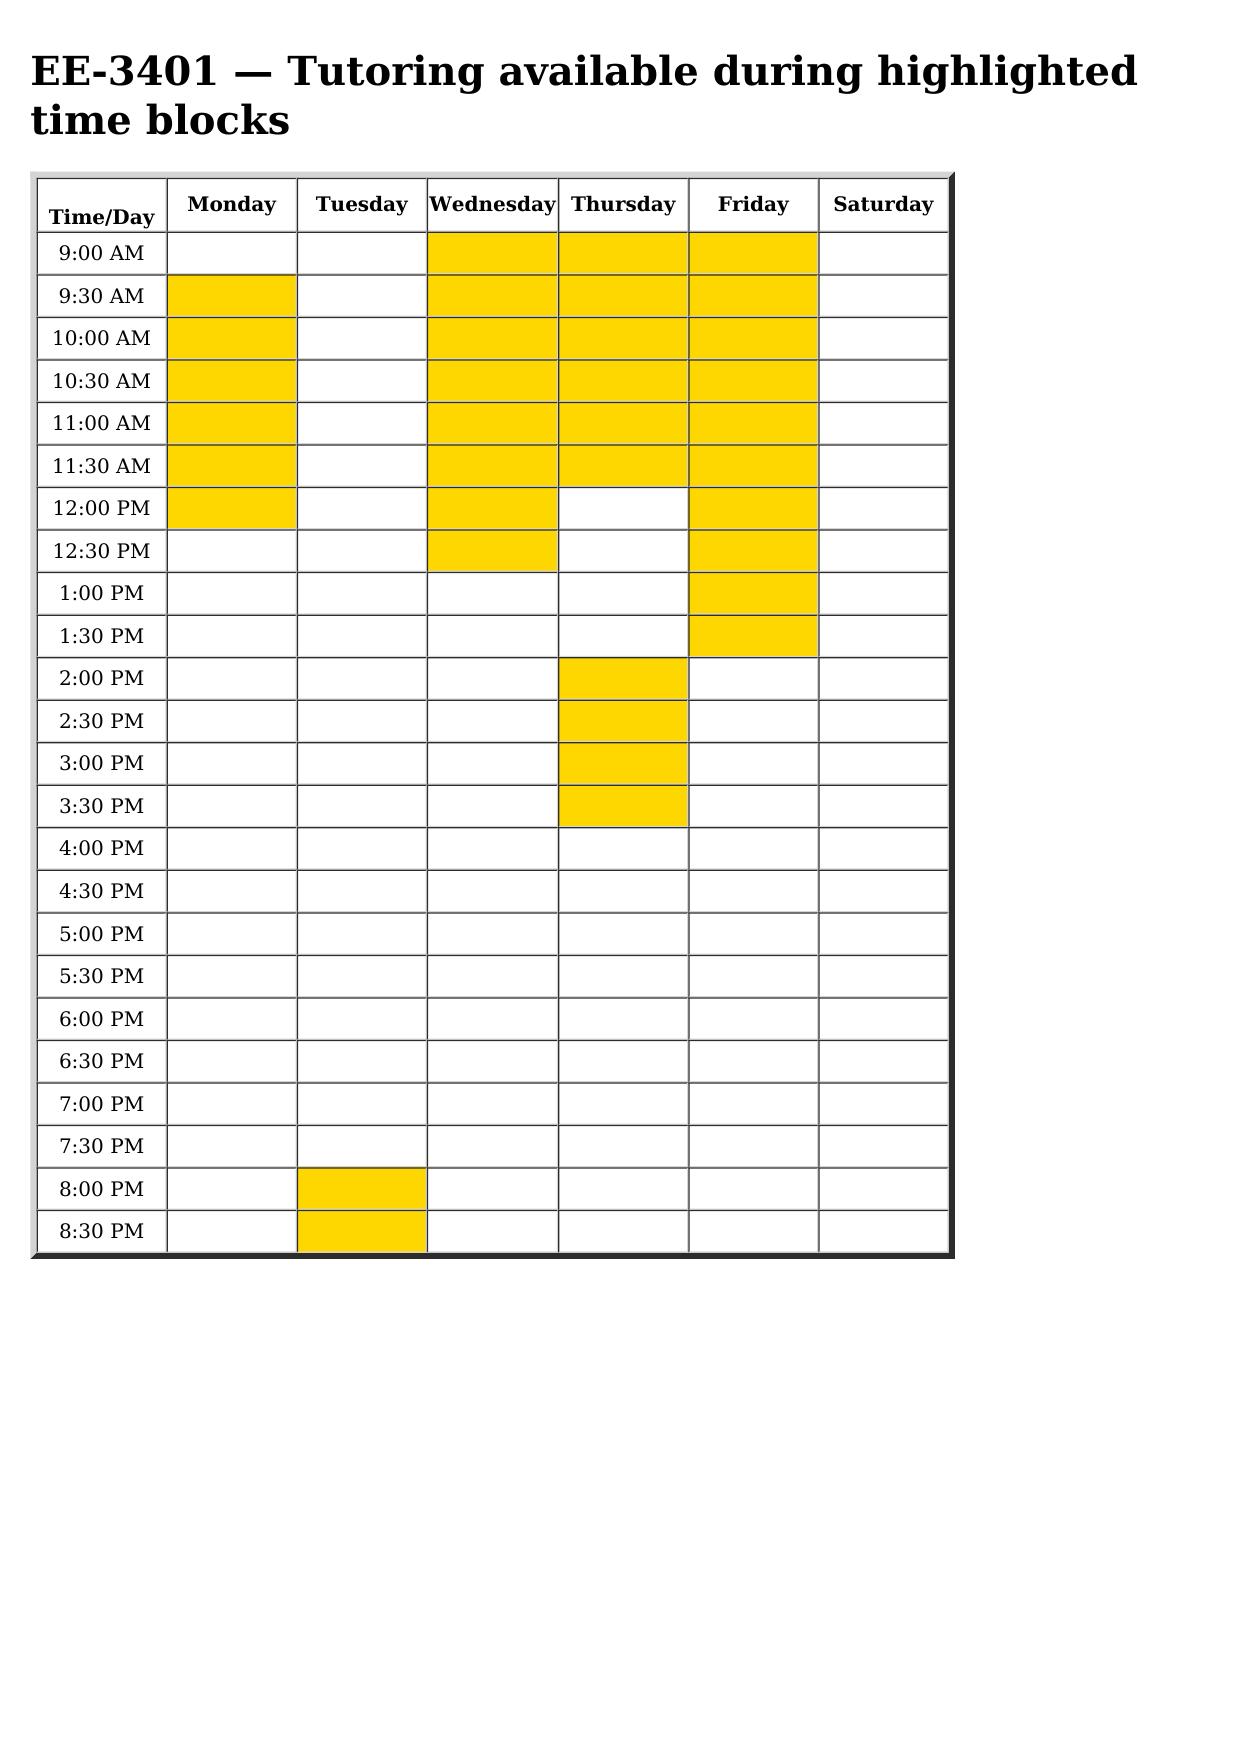 ee 3401 schedule